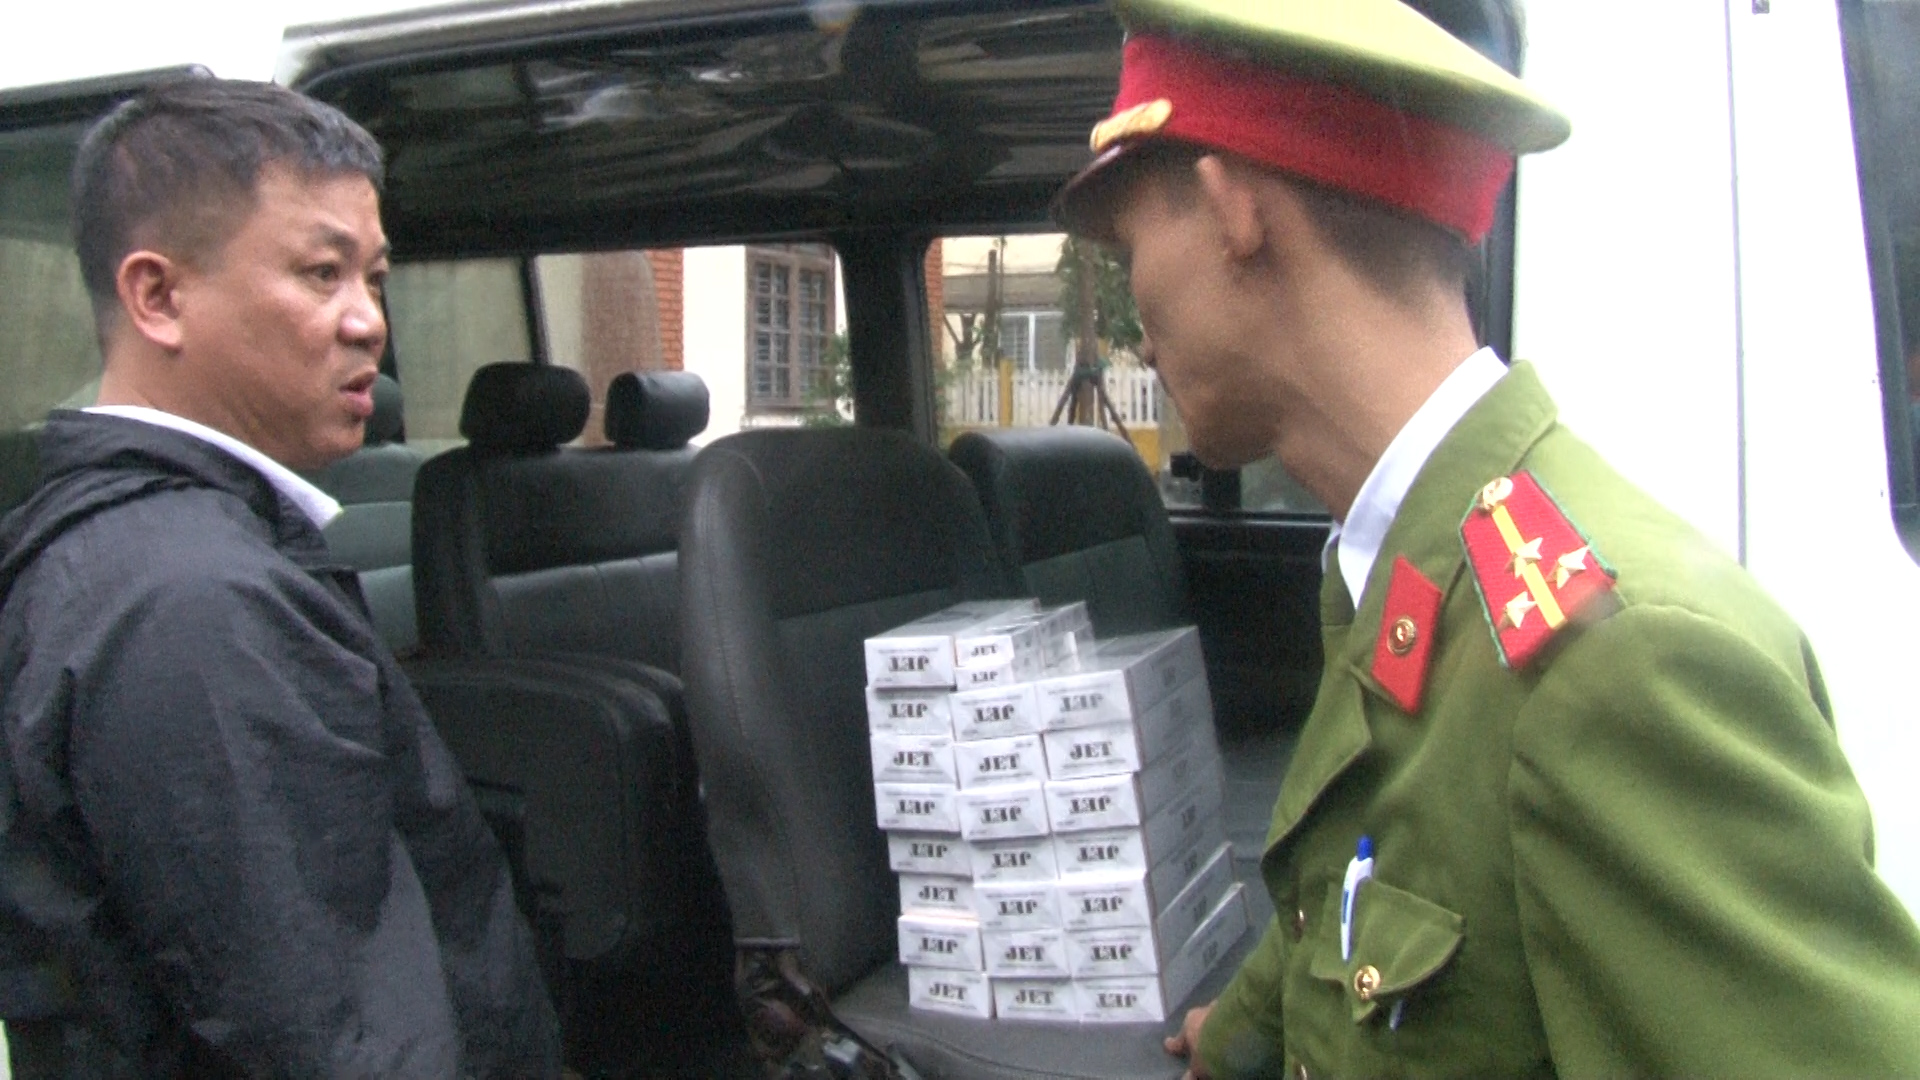 Đội Cảnh sát kinh tế - Công an thành phố Huế phát hiện xe ô tô do ông Đoàn Chơn Mẫn điều khiển vận chuyển 250 bao thuốc Jet.